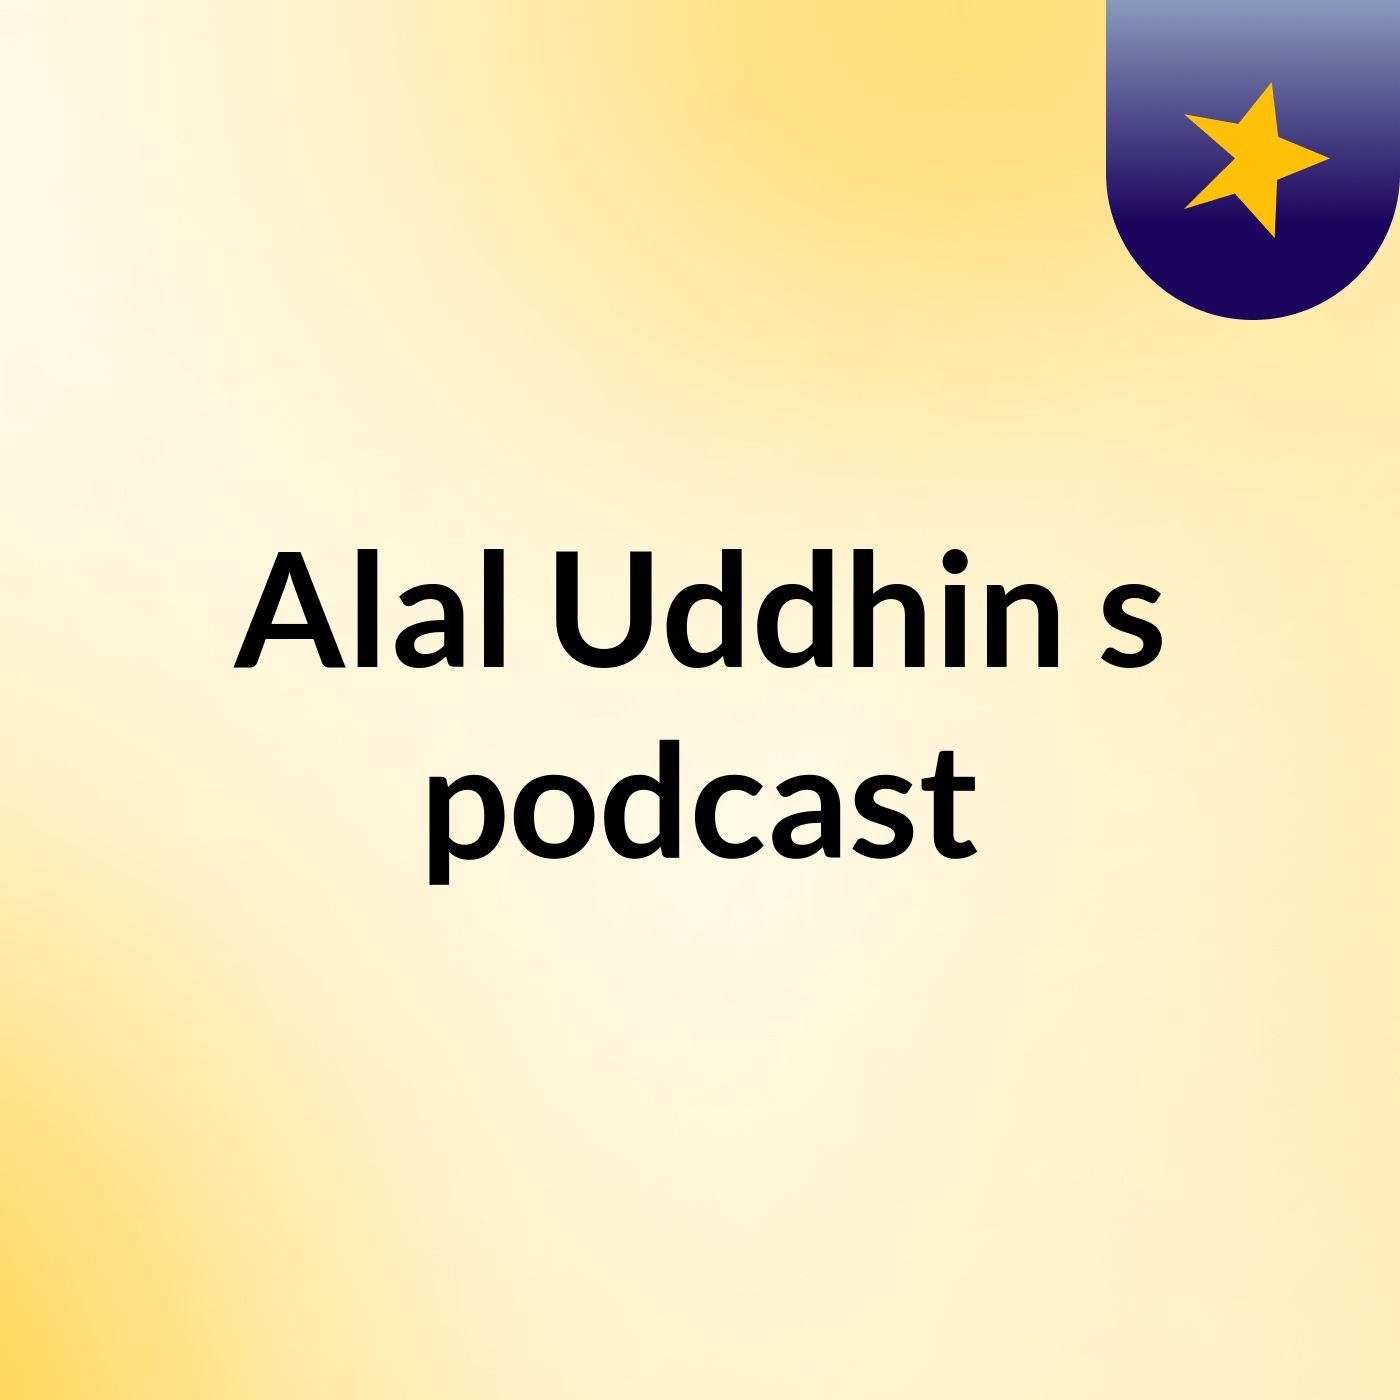 Alal Uddhin's podcast